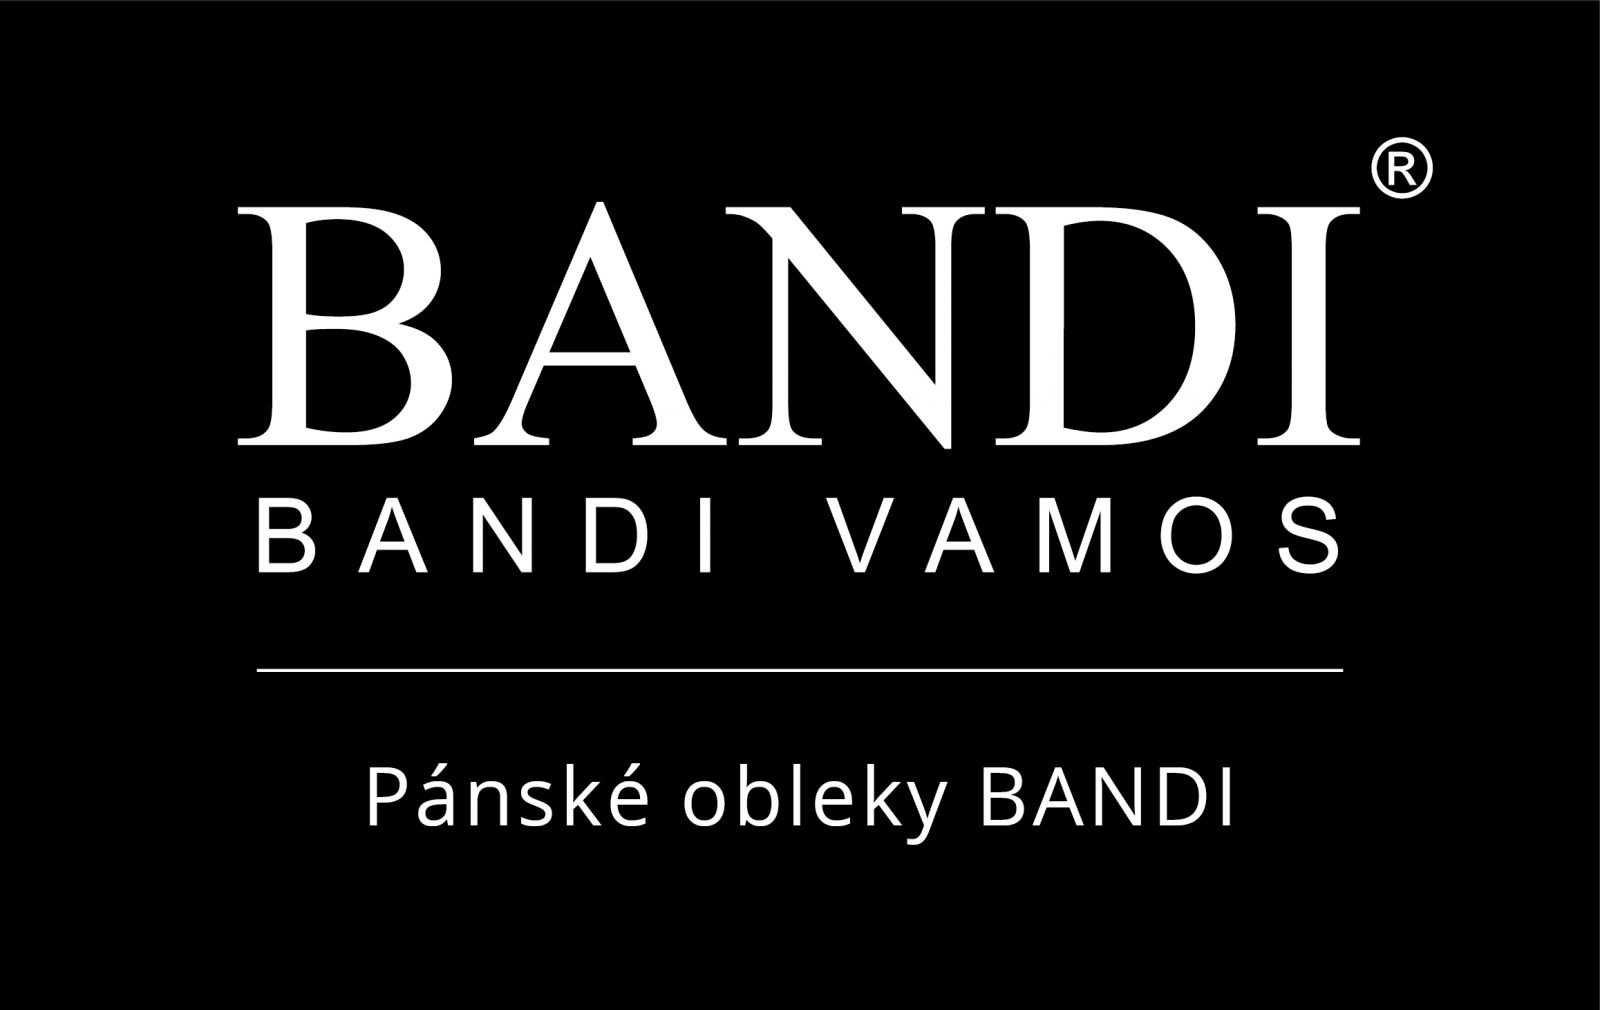 BANDI